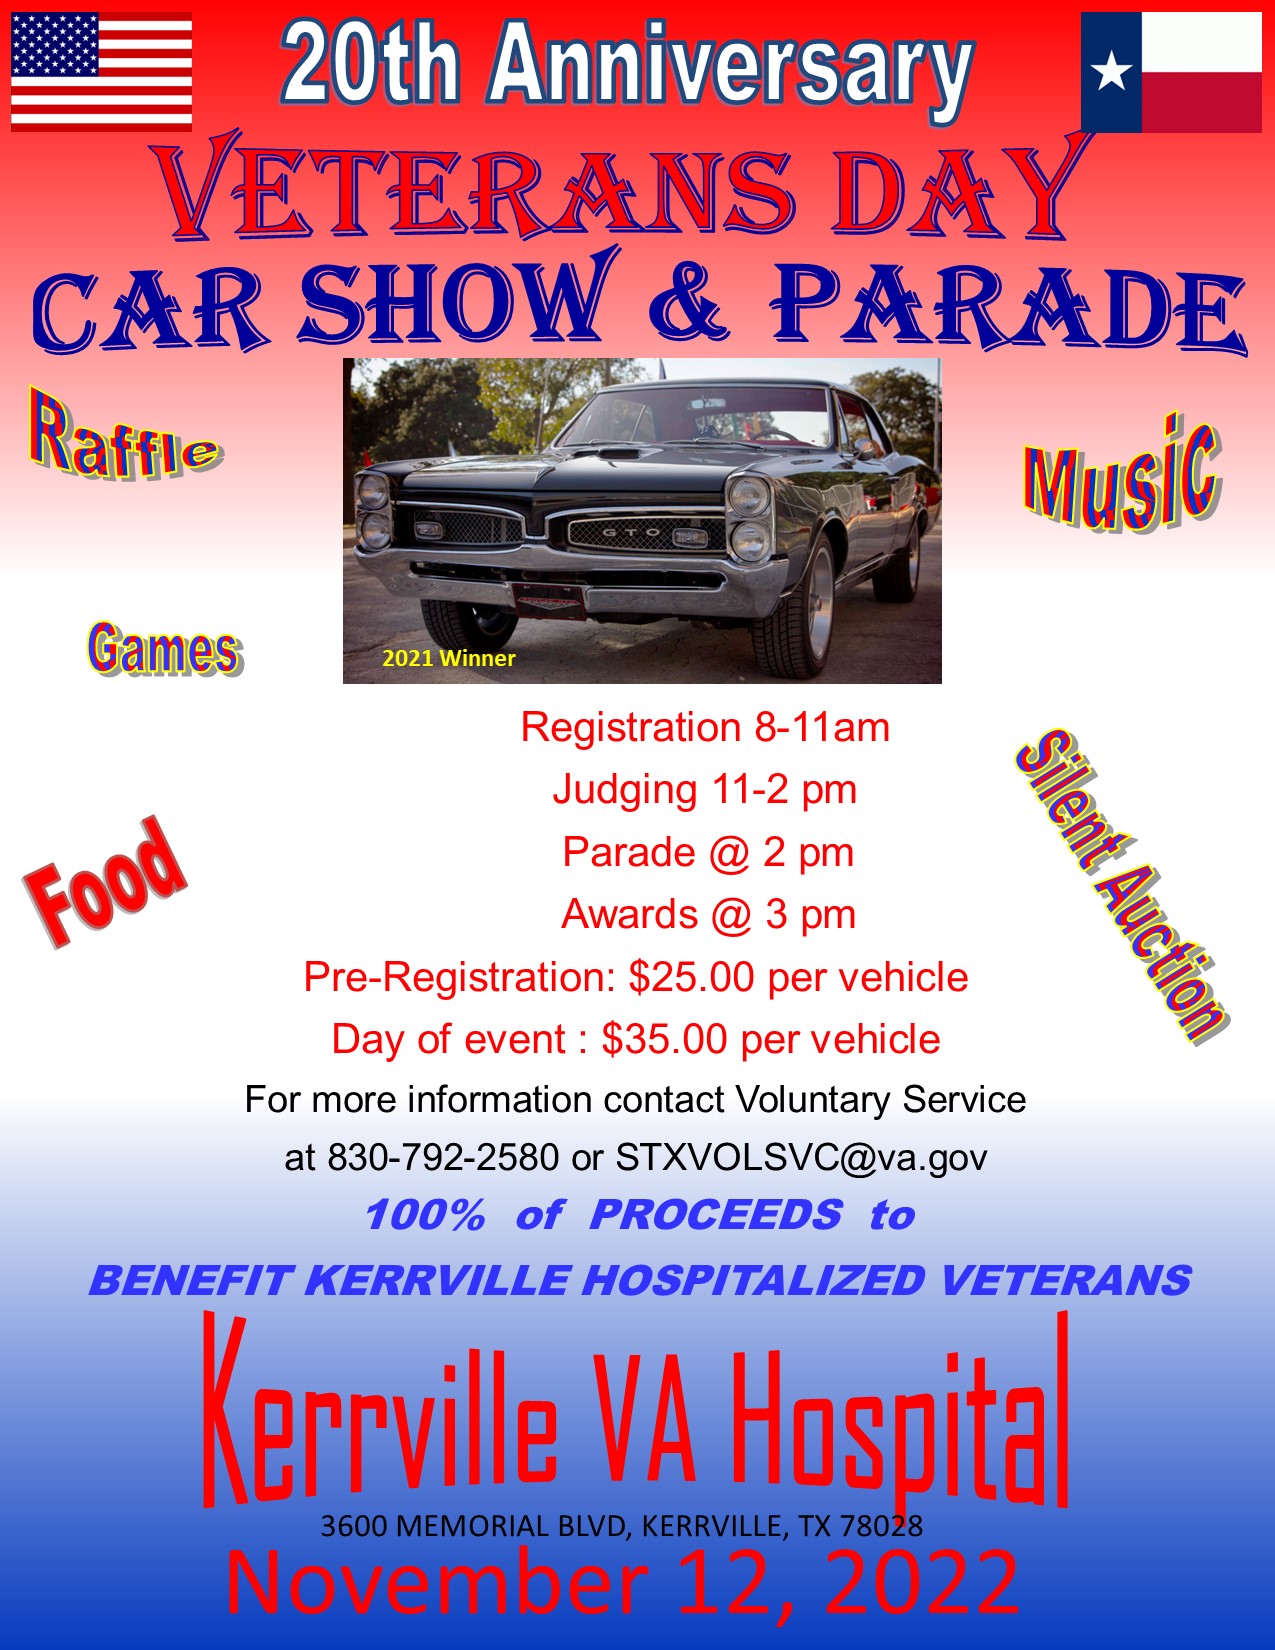 Veterans Day Car Show & Parade